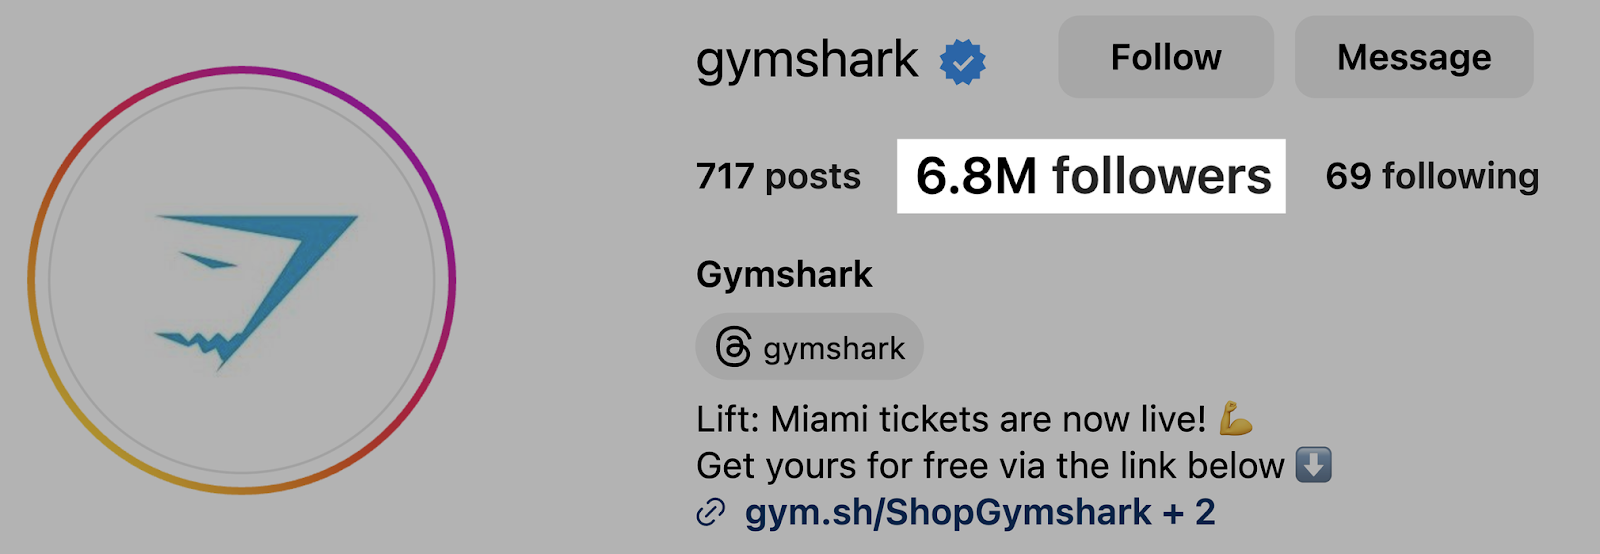 Gymshark's followers on Instagram—6.8M